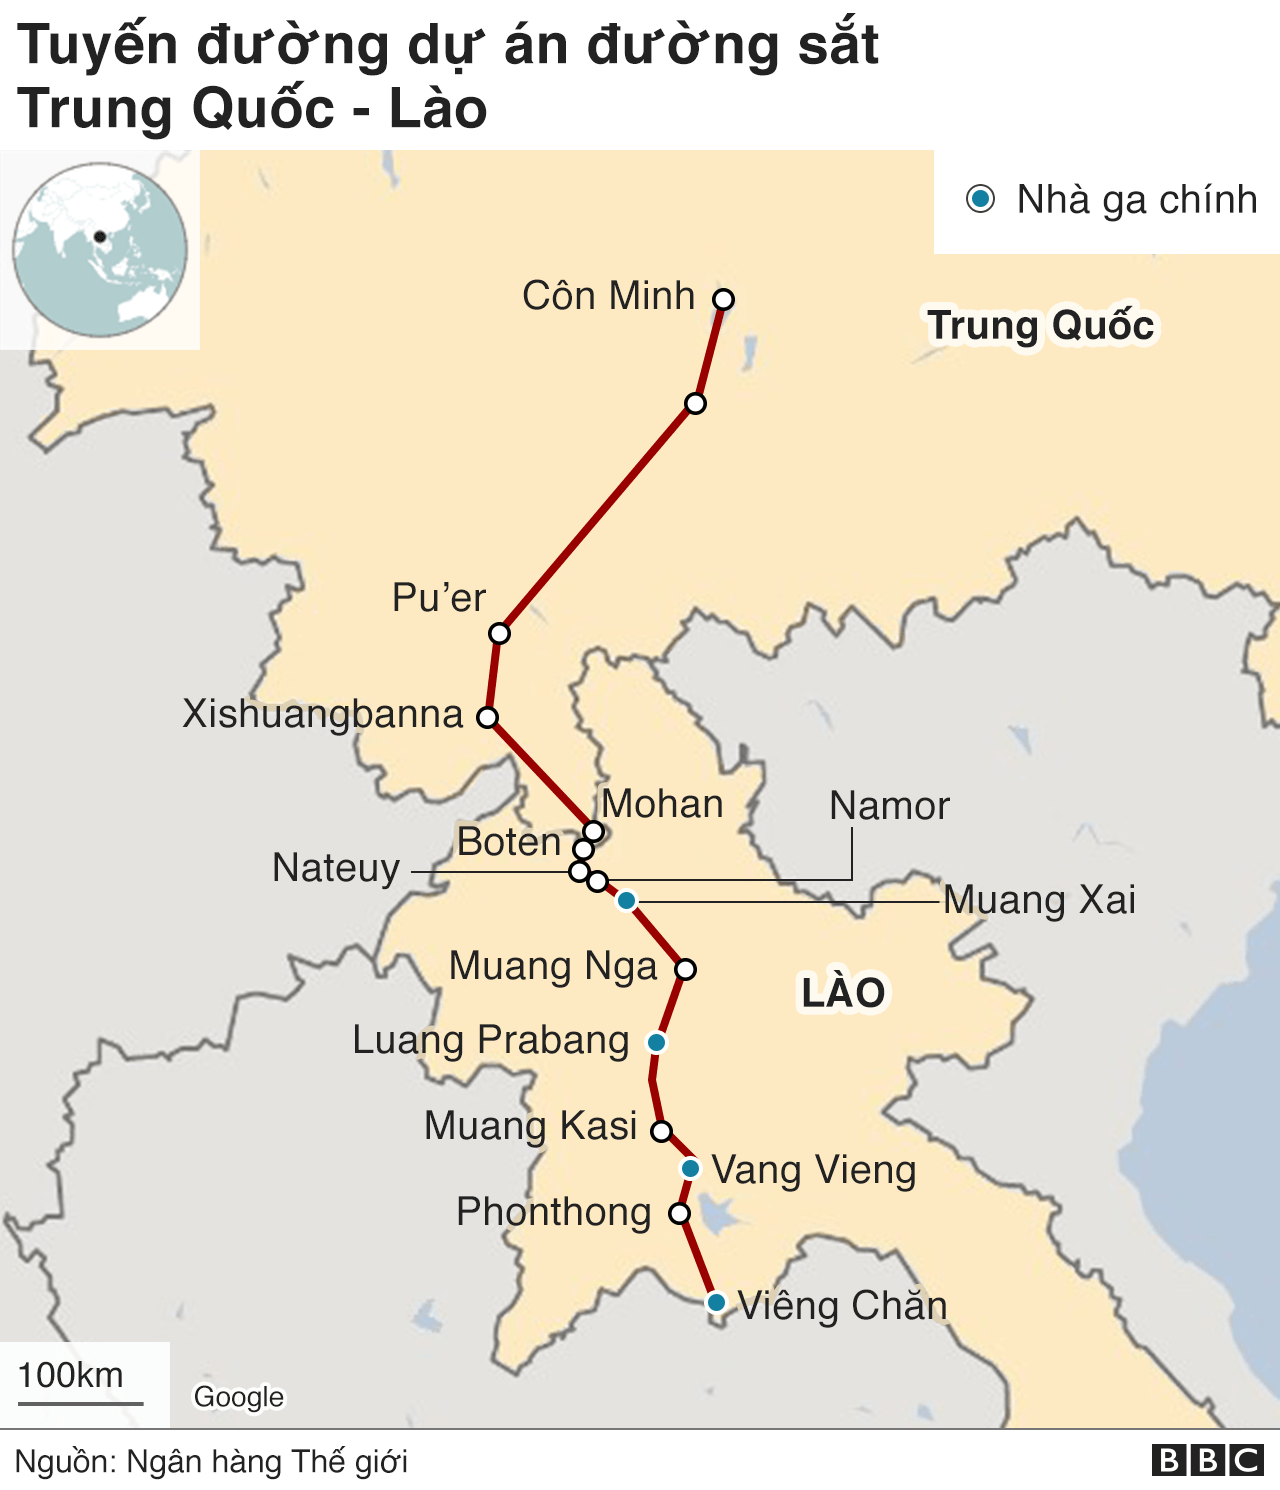 Với đường sắt cao tốc, việc di chuyển giữa các thành phố chỉ còn một chuyện nhỏ, tiết kiệm thời gian hơn cho những chuyến đi dài. Hãy xem hình ảnh về đường sắt cao tốc tại Việt Nam, bạn sẽ cảm nhận được tốc độ và sự tiện lợi của phương tiện này.